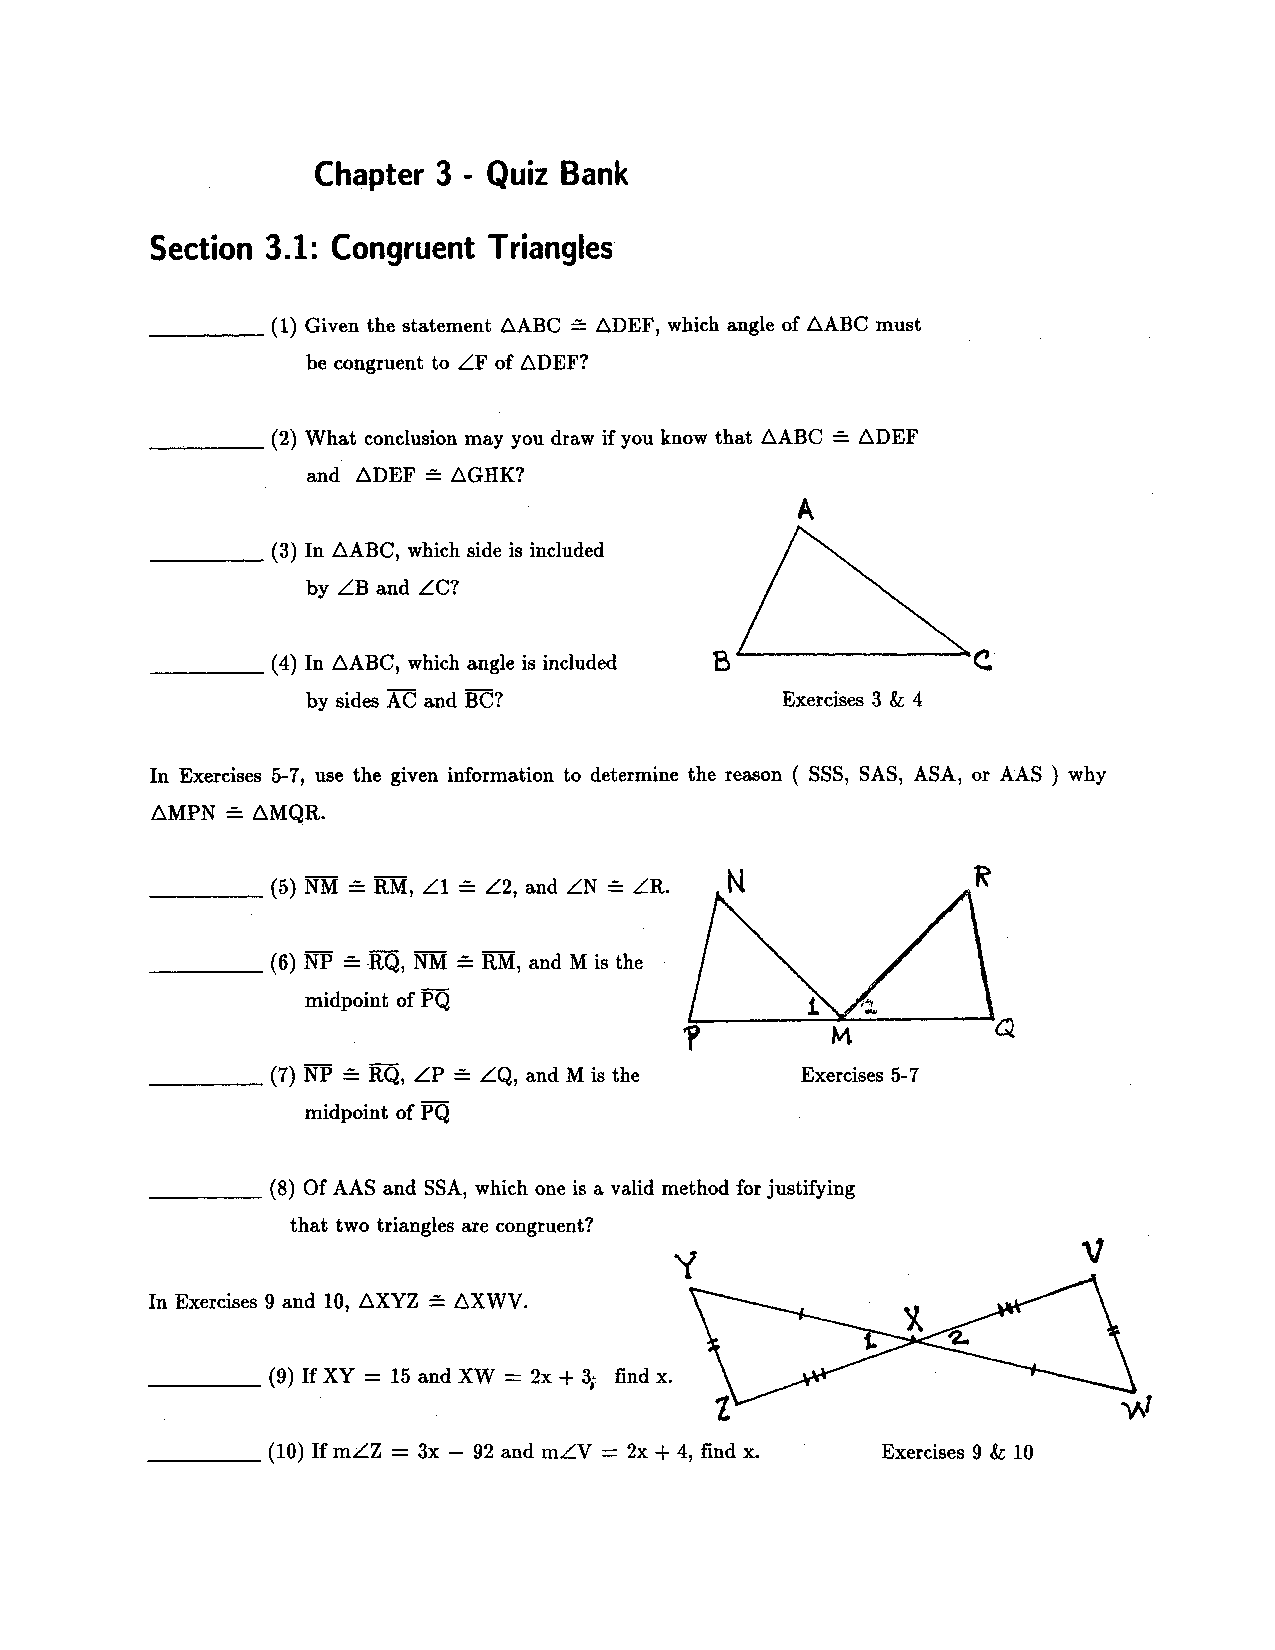 Congruent Triangles Quiz